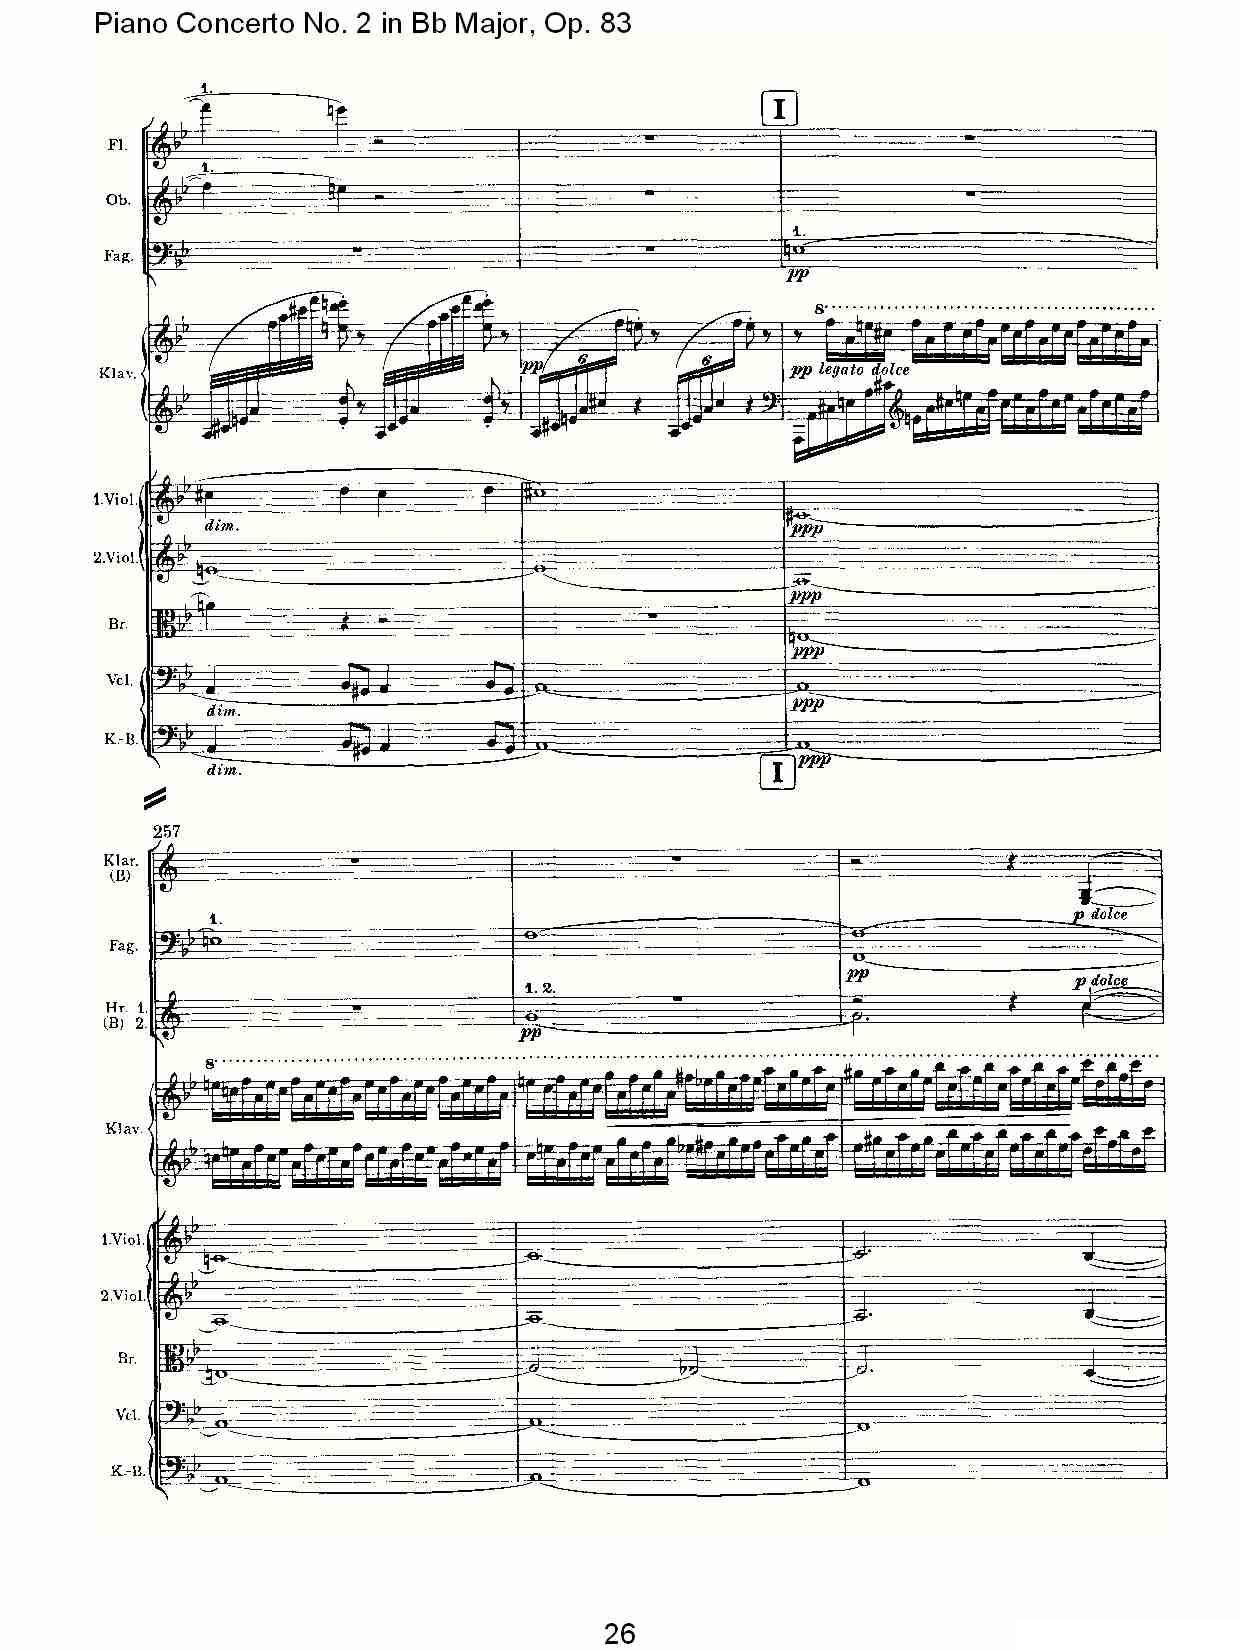 Bb大调钢琴第二协奏曲, Op.83第一乐章（一）钢琴曲谱（图27）